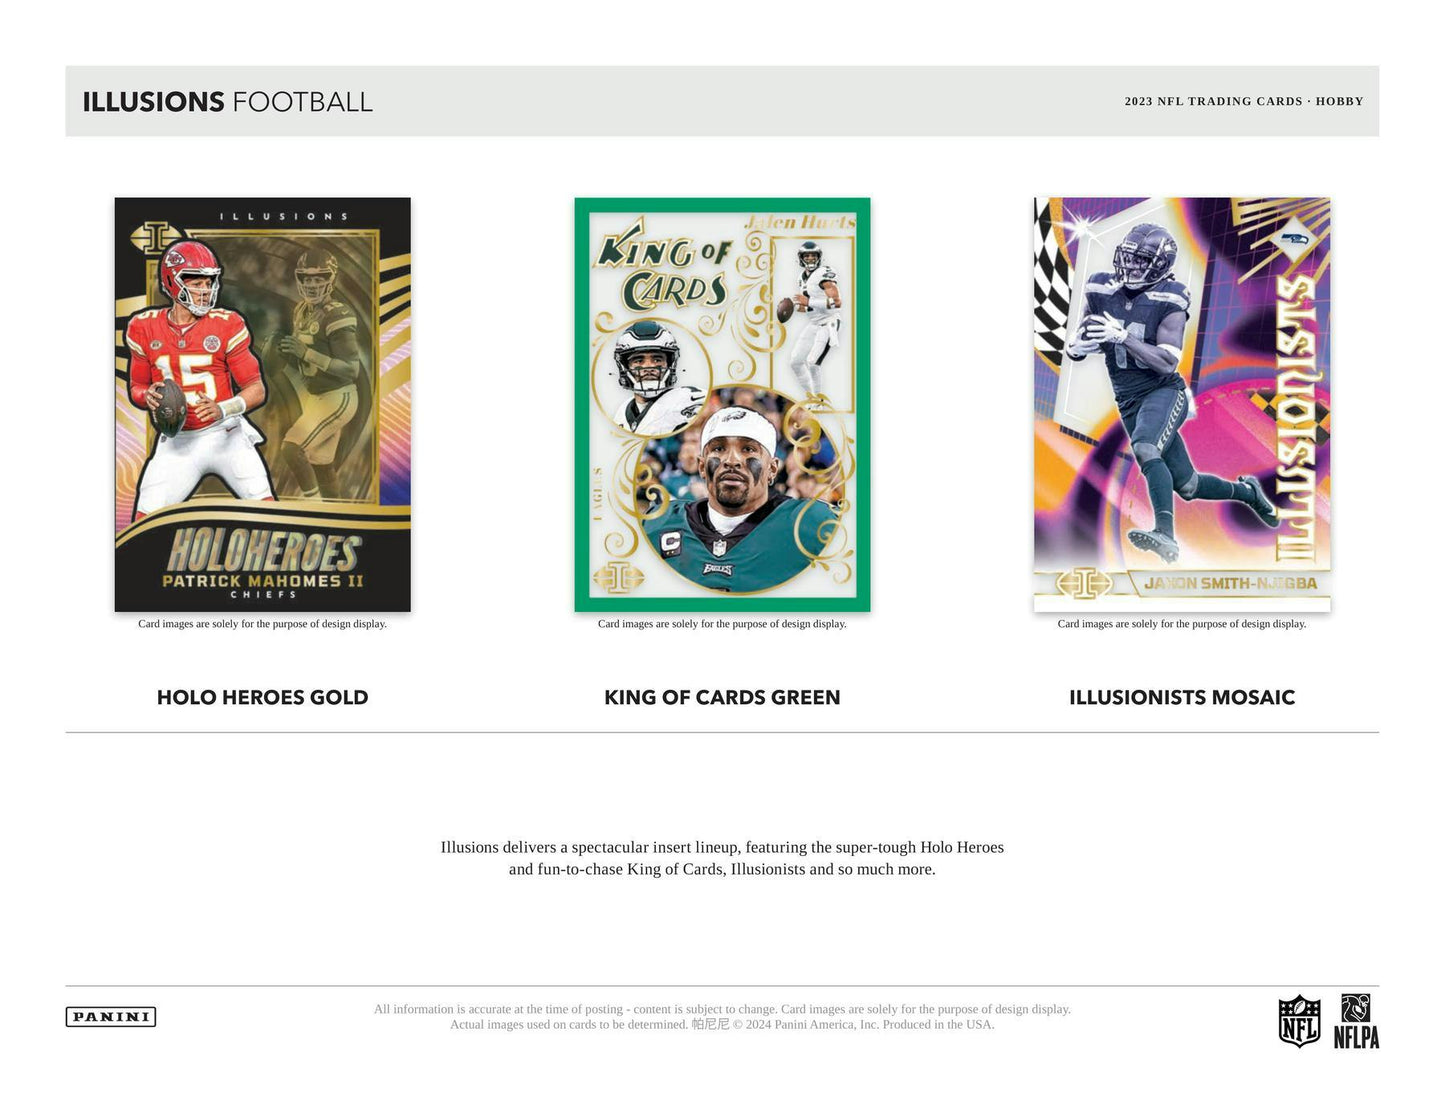 2023 Panini Illusions Football Hobby Box 746134143182 - King Card Canada